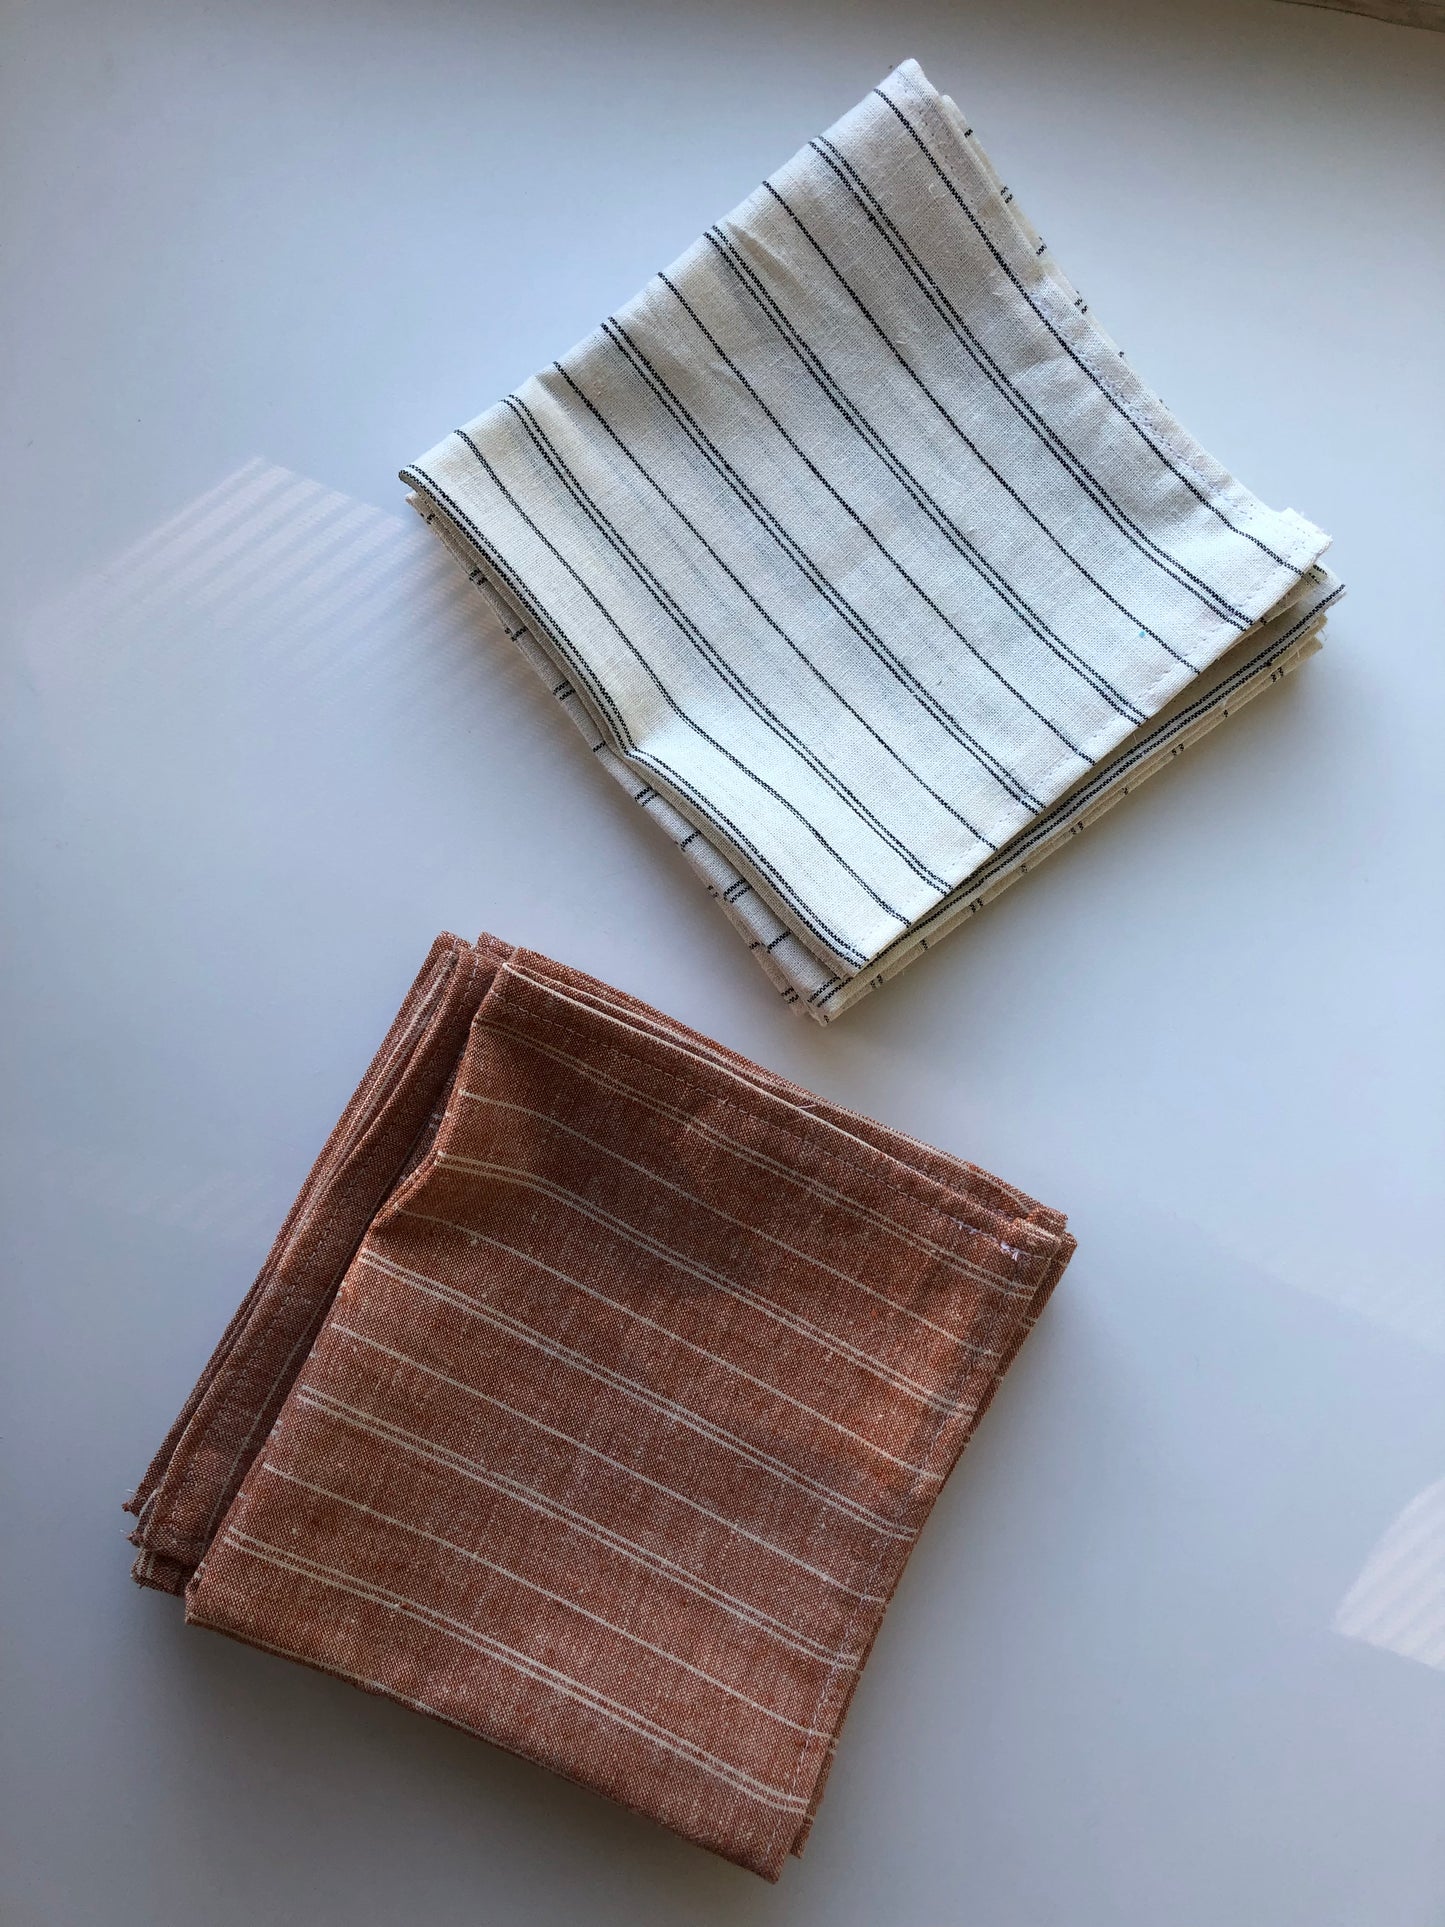 Serviettes de table en tissus lavables Pistache, couleurs variées